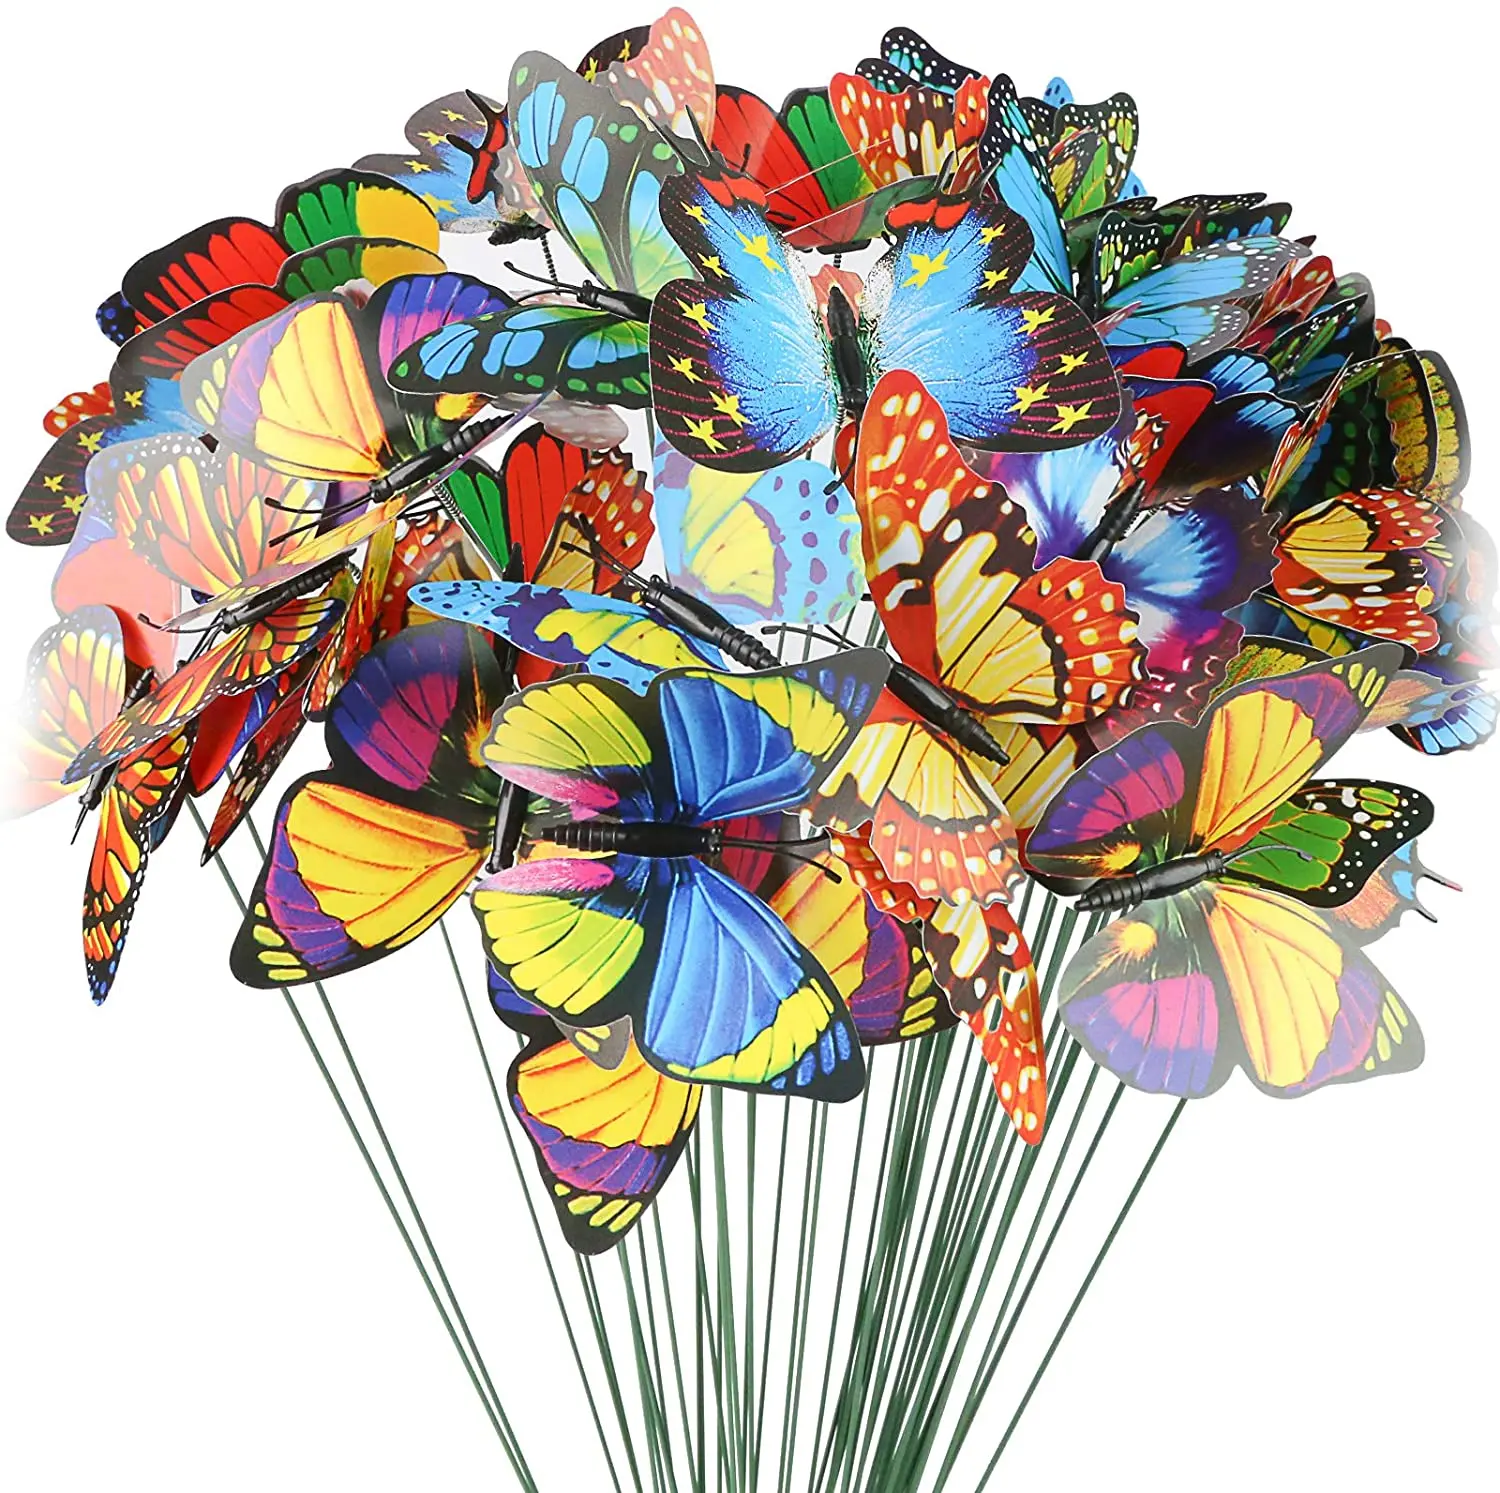 

10 шт. букет бабочек, садовый двор, плантатор, красочные причудливые бабочки, декор для улицы, Цветочный декор